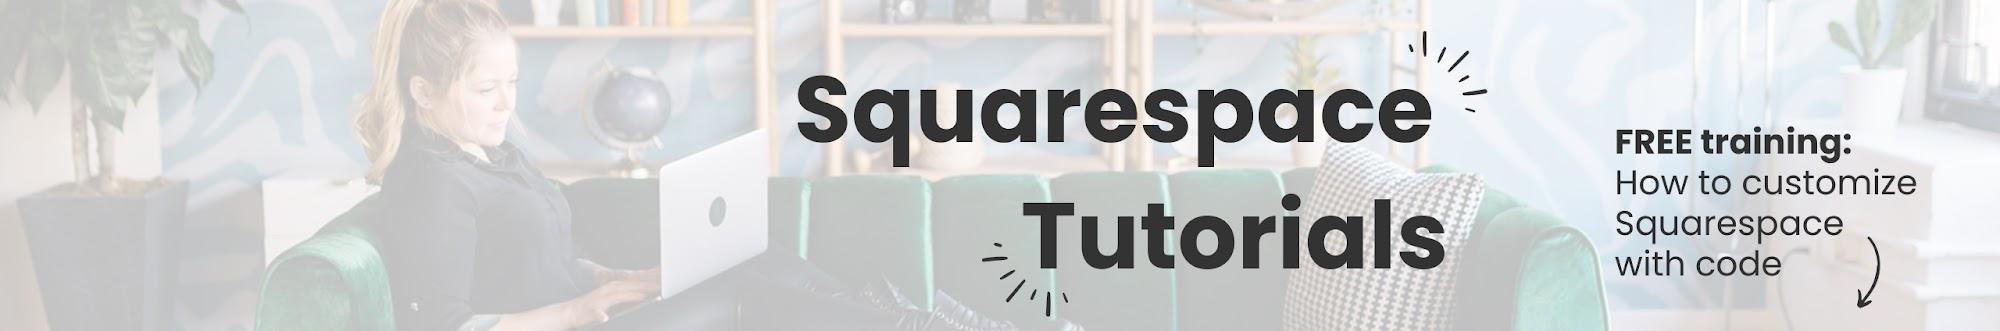 InsideTheSquare - Squarespace Tutorials